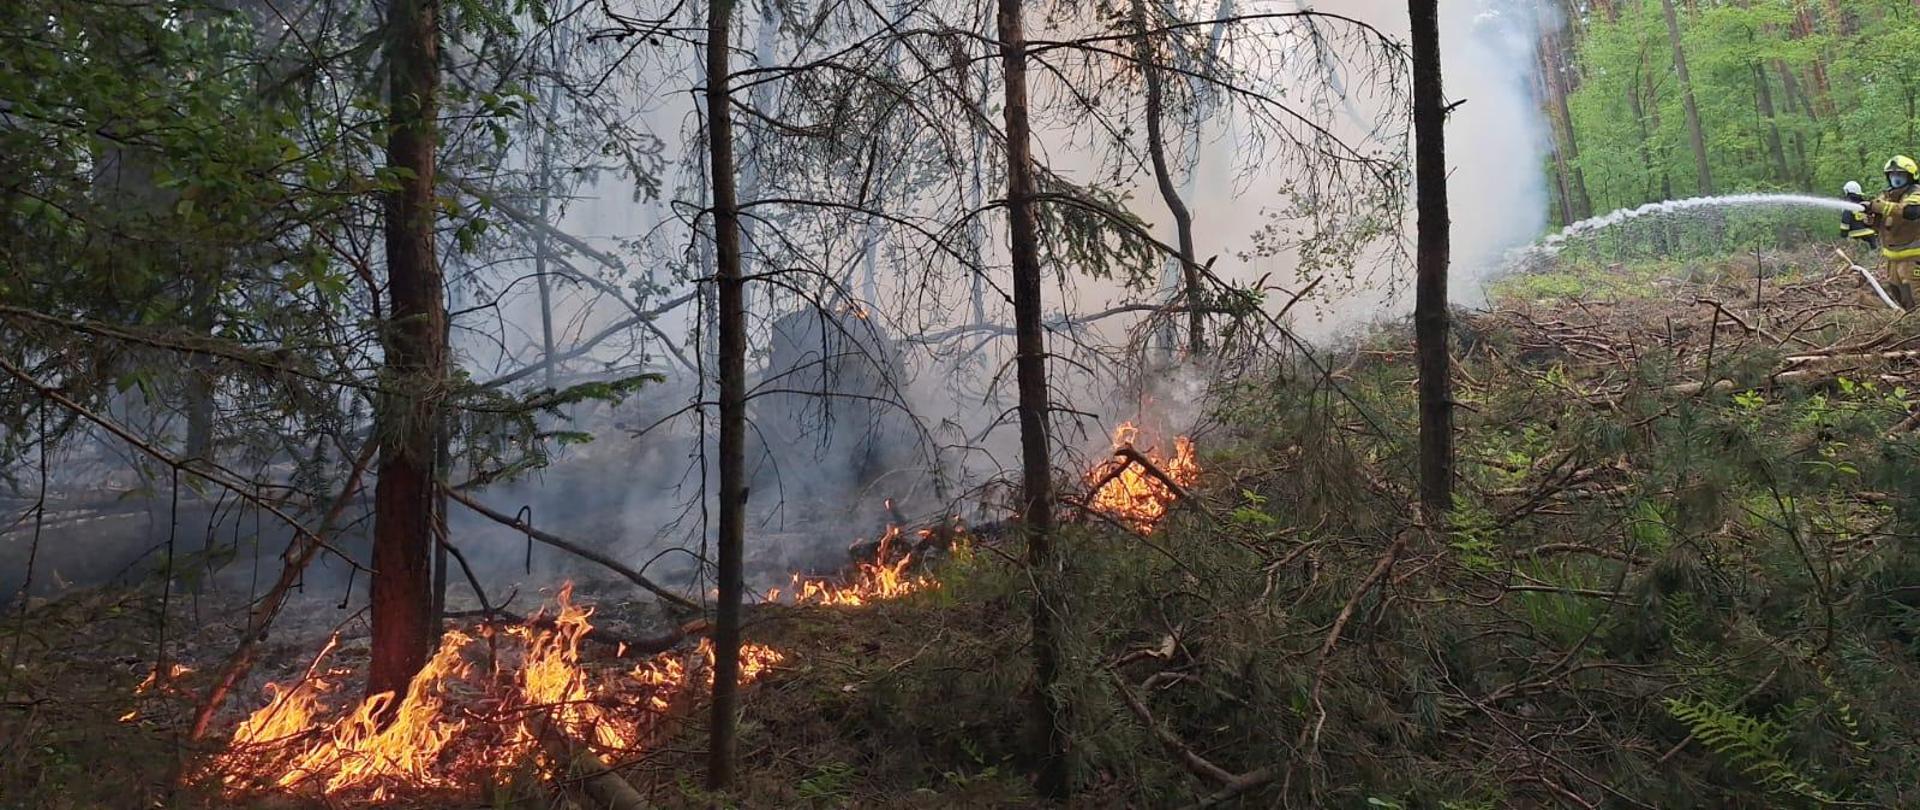 Pali się las. Strażacy podają prądy wody celem ograniczenia rozwoju pożaru. Widoczne płomienie trawiące sciółkę leśną i gęsty dym unoszący się nad lasem 